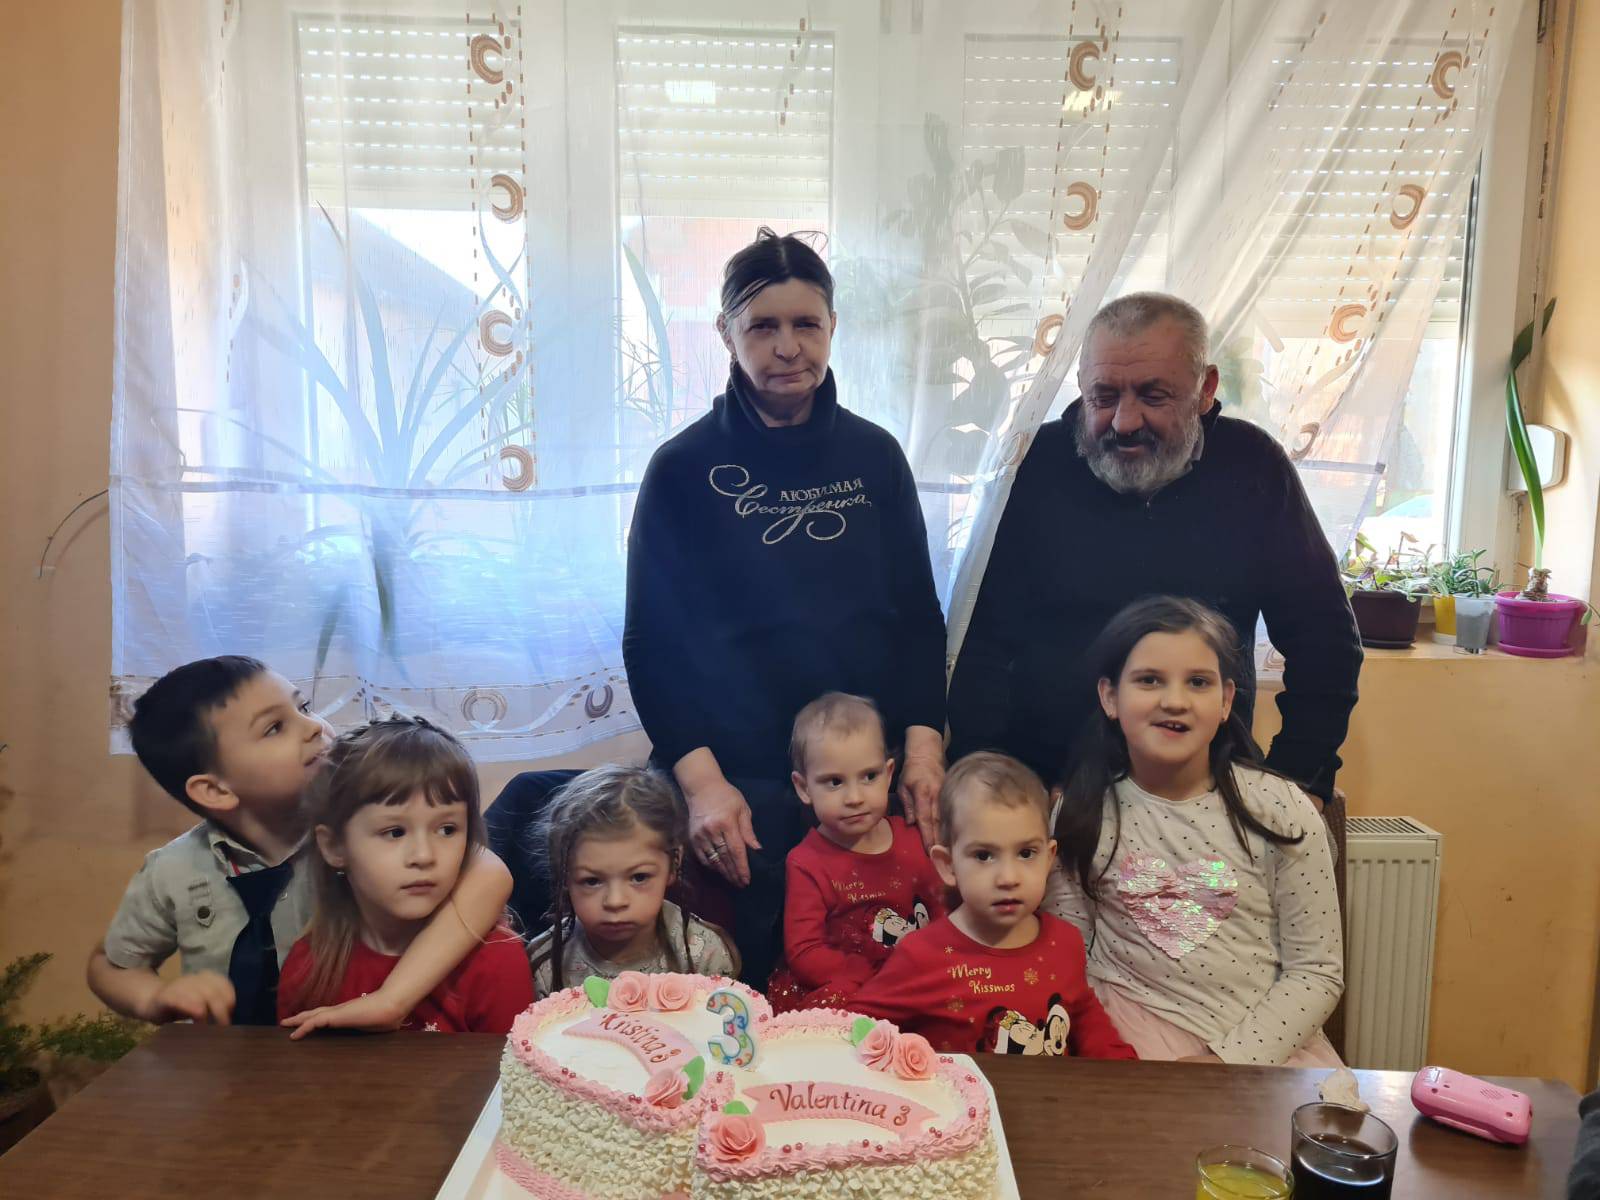 Prve hrvatske sijamske blizanke slave treći rođendan: 'Ispunjeni smo srećom kad ih gledamo'